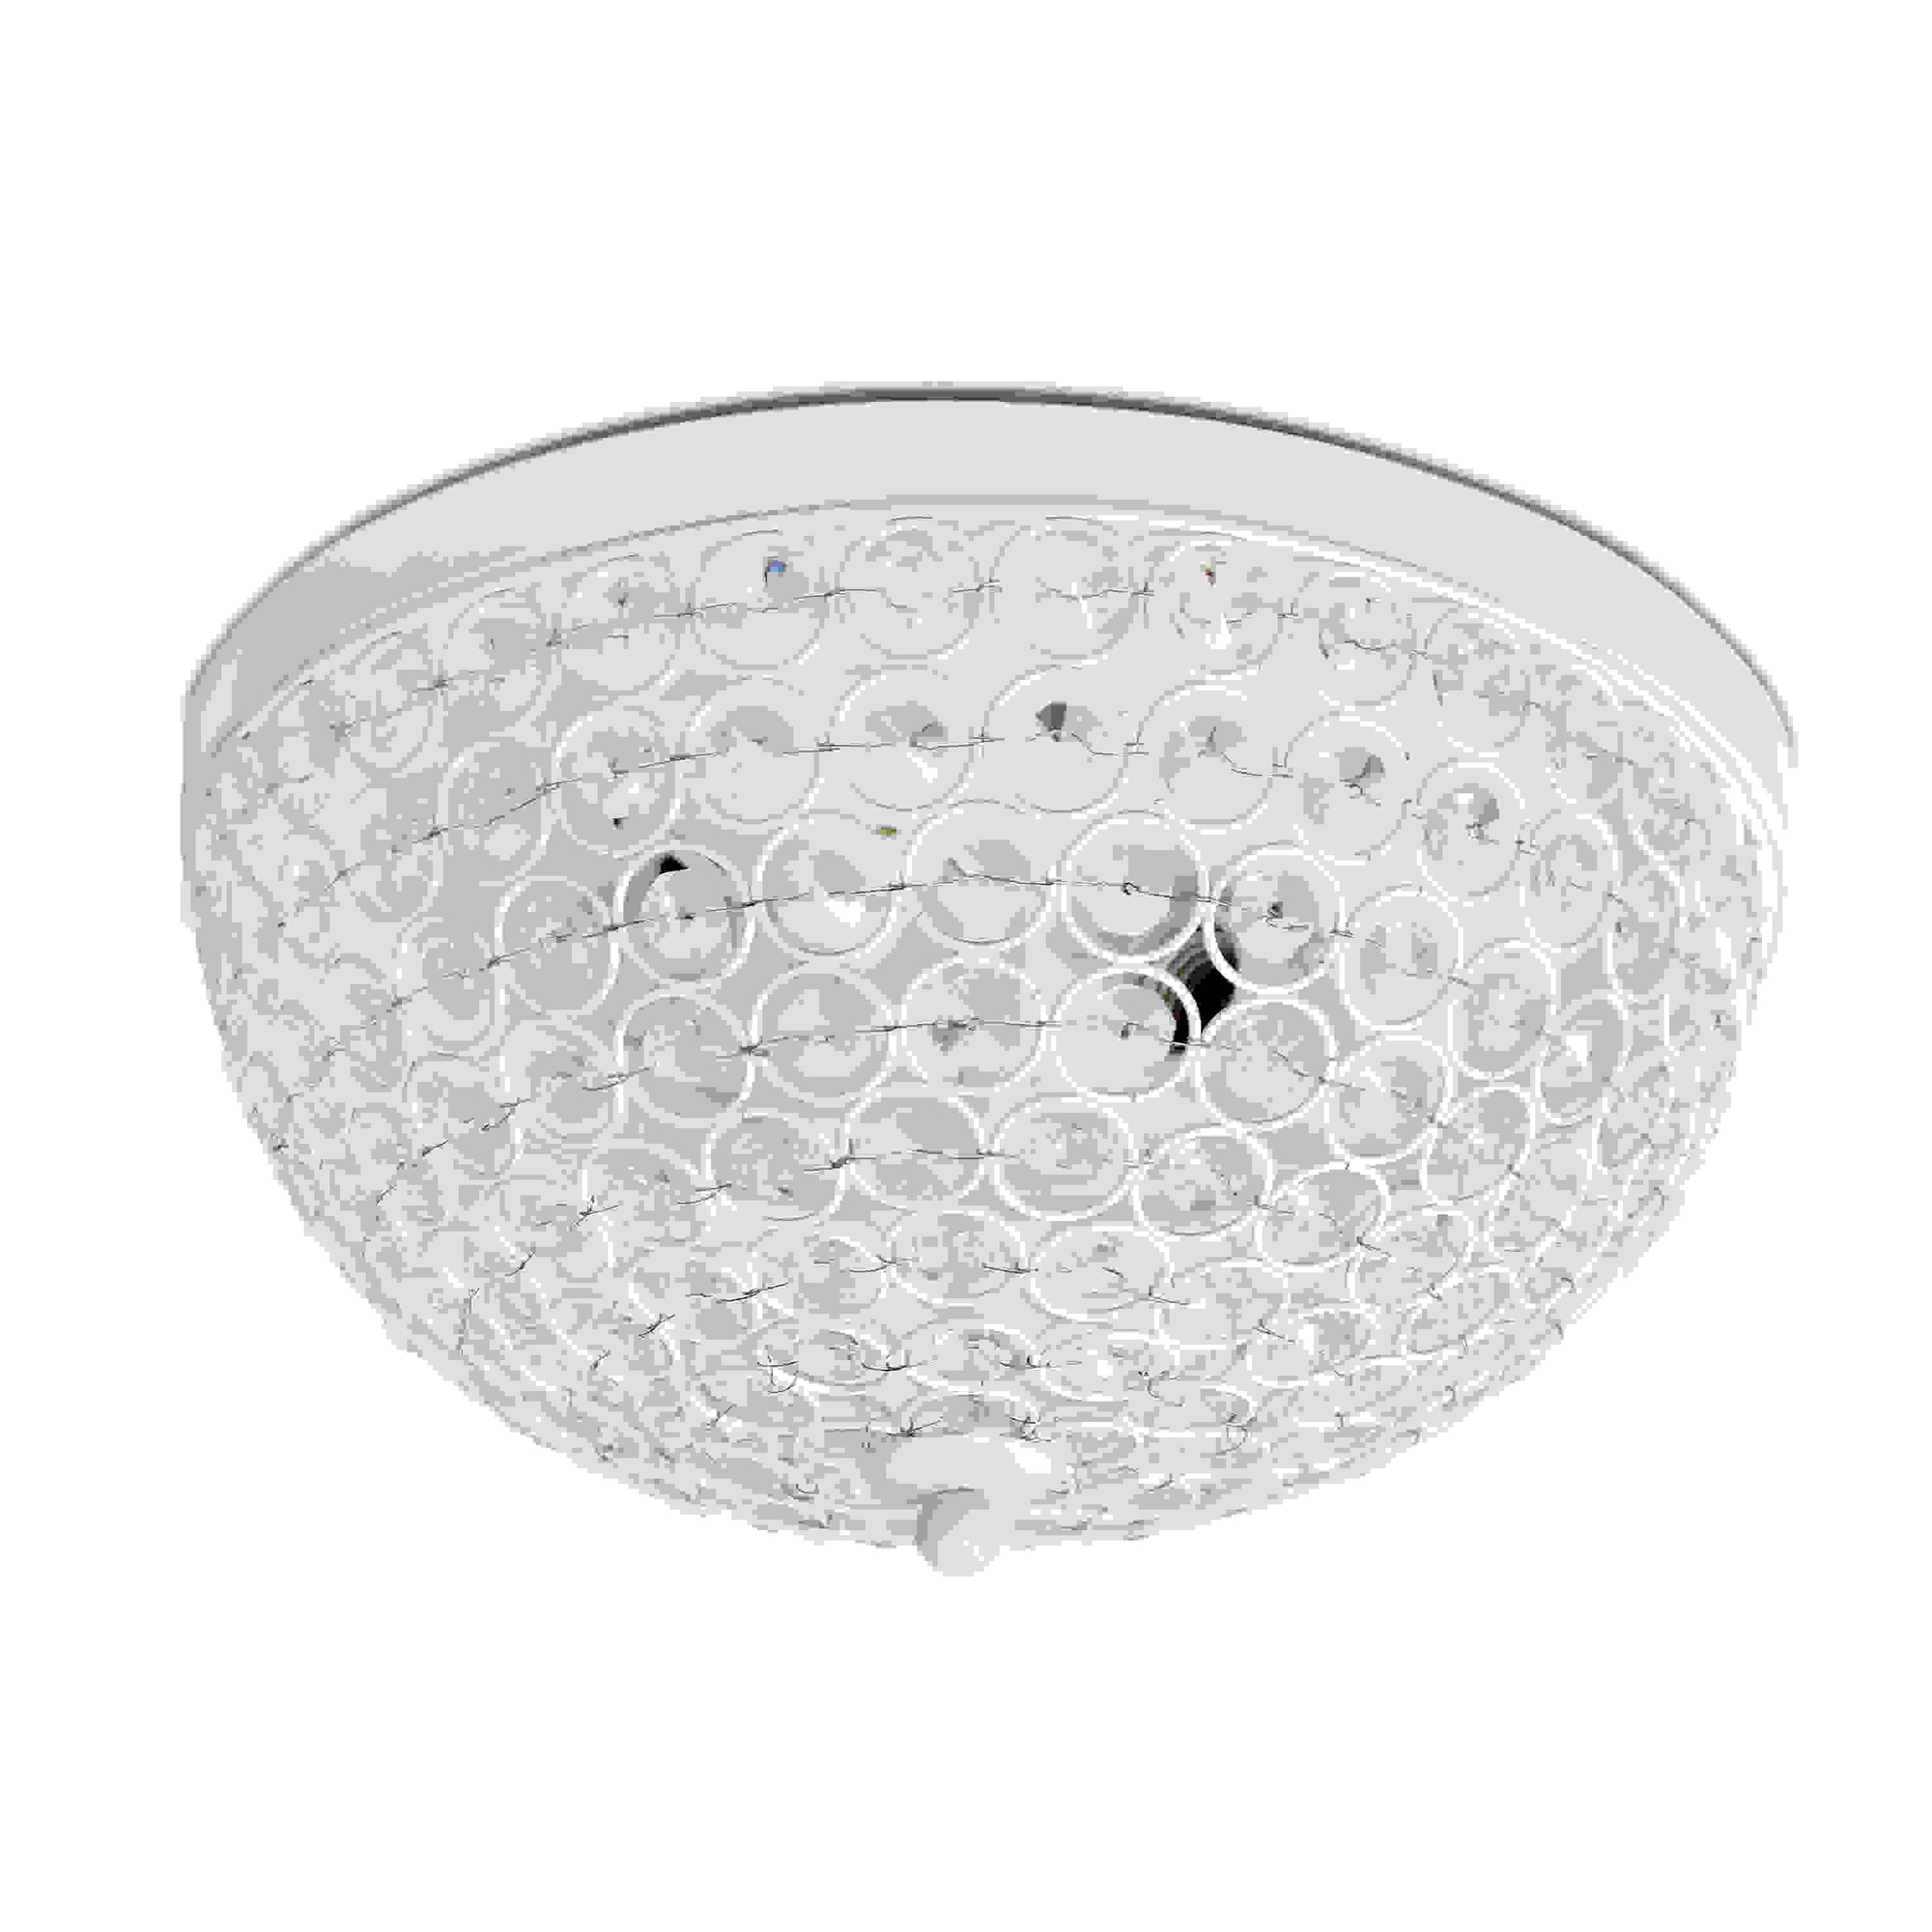 Elegant Designs 2 Light Elipse Crystal Flush Mount Ceiling Light, White